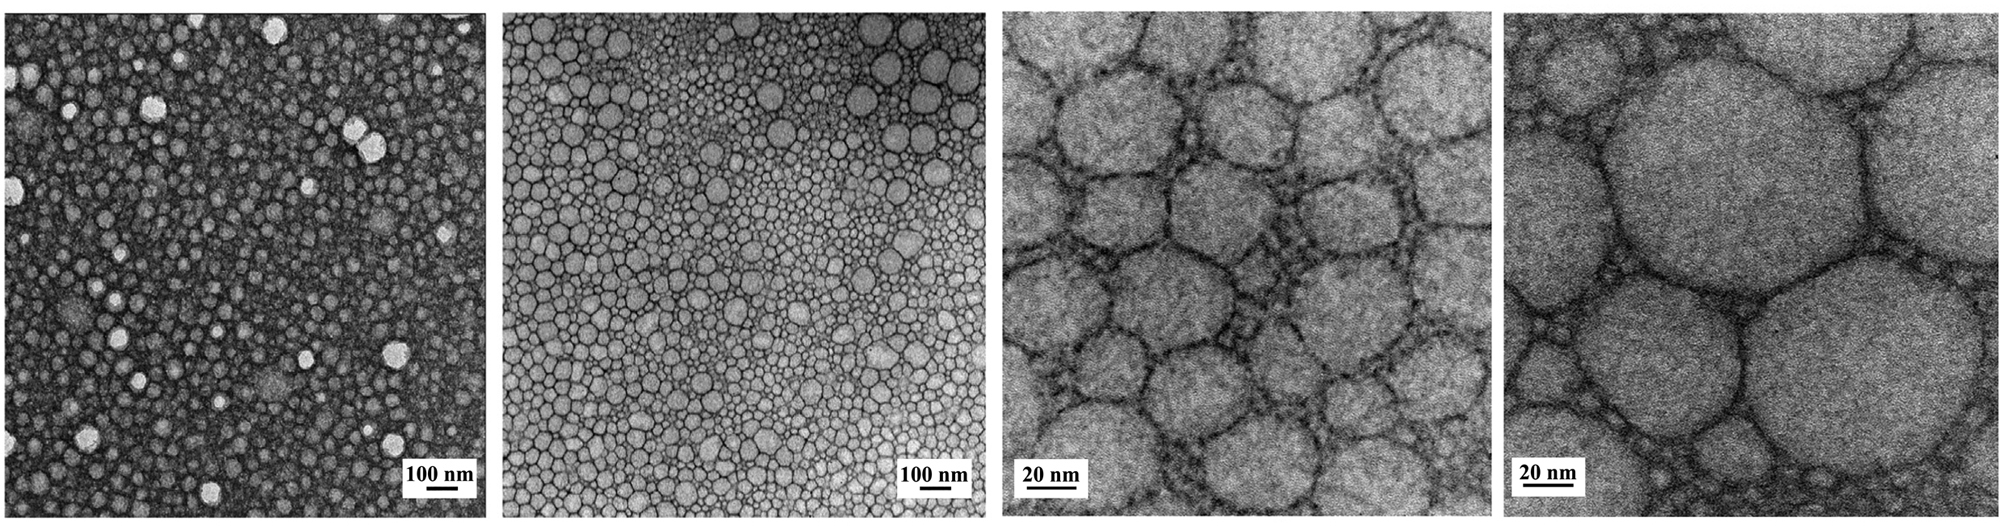 immagini TEM di nanoformulazioni